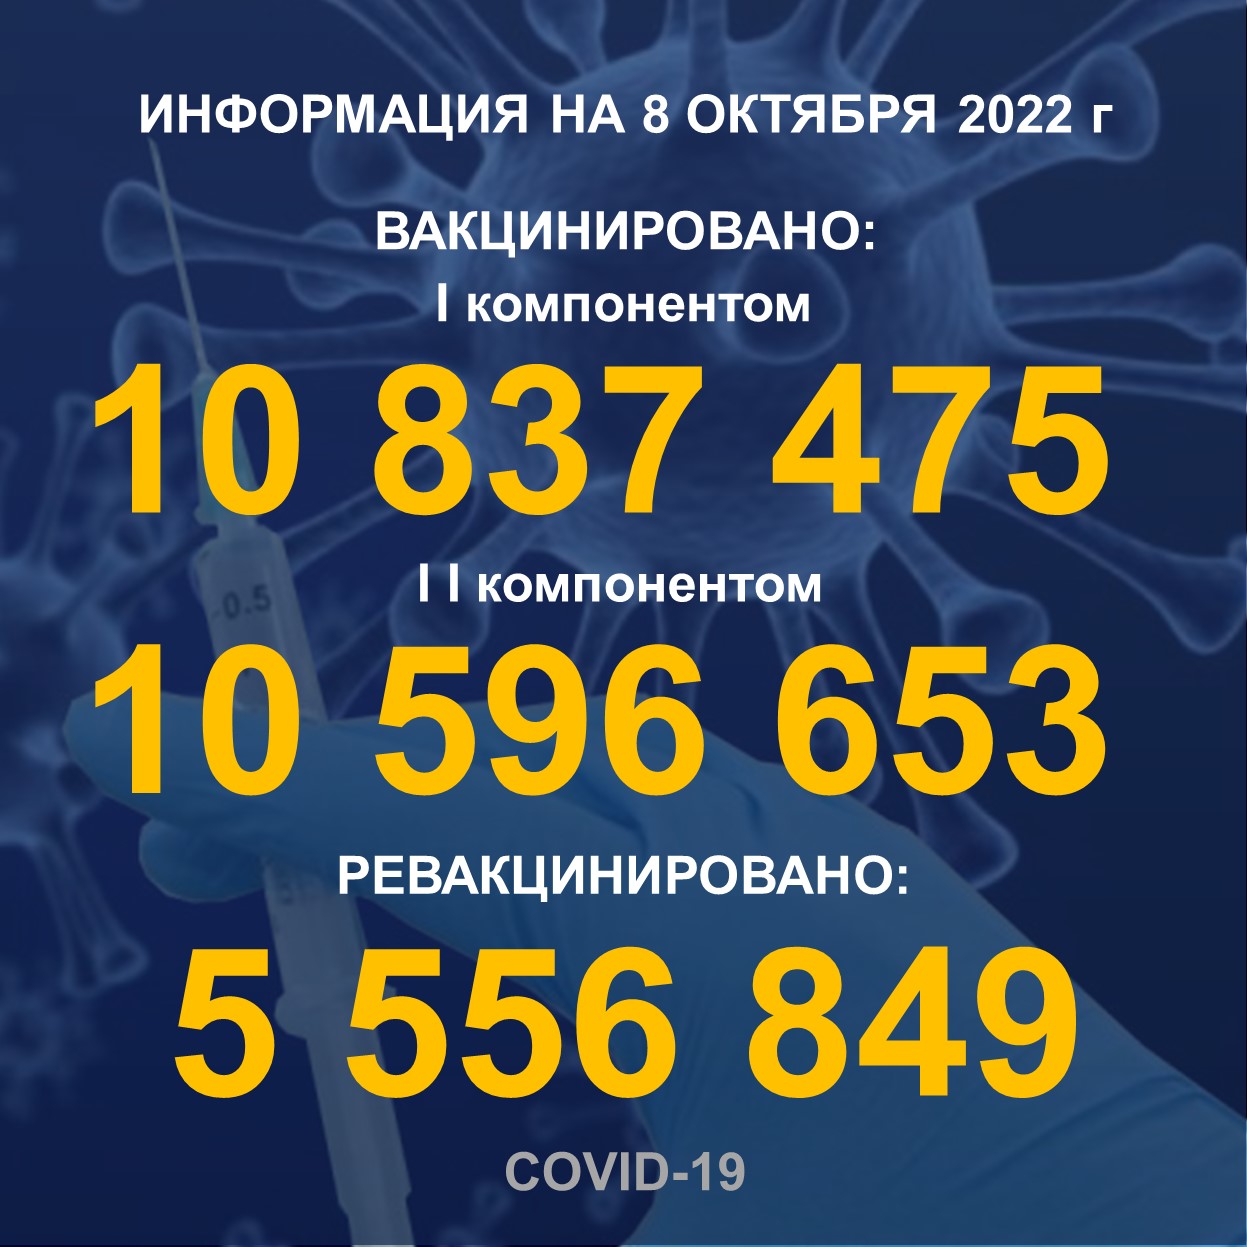 I компонентом 10 837 475 человек провакцинировано в Казахстане на 08.10.2022 г, II компонентом 10 596 653 человек. Ревакцинировано – 5 556 849